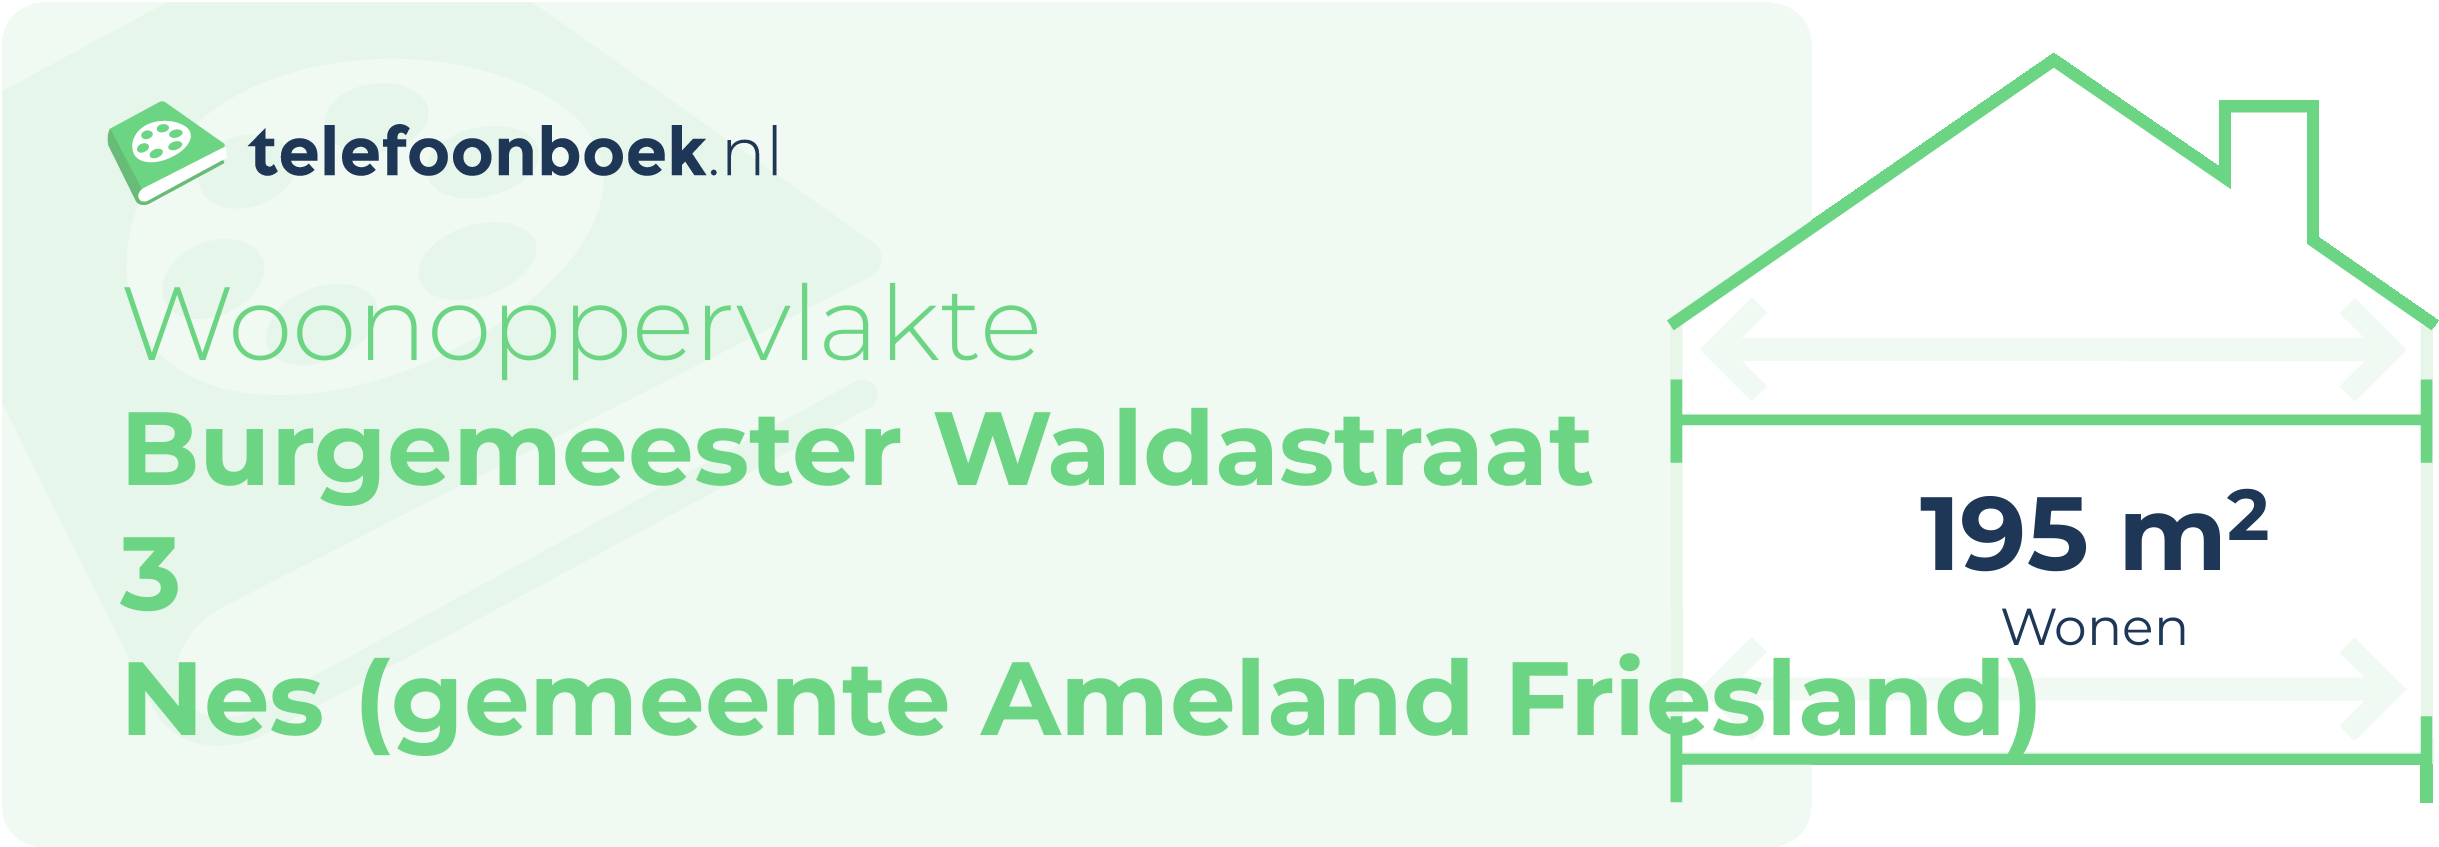 Woonoppervlakte Burgemeester Waldastraat 3 Nes (gemeente Ameland Friesland)